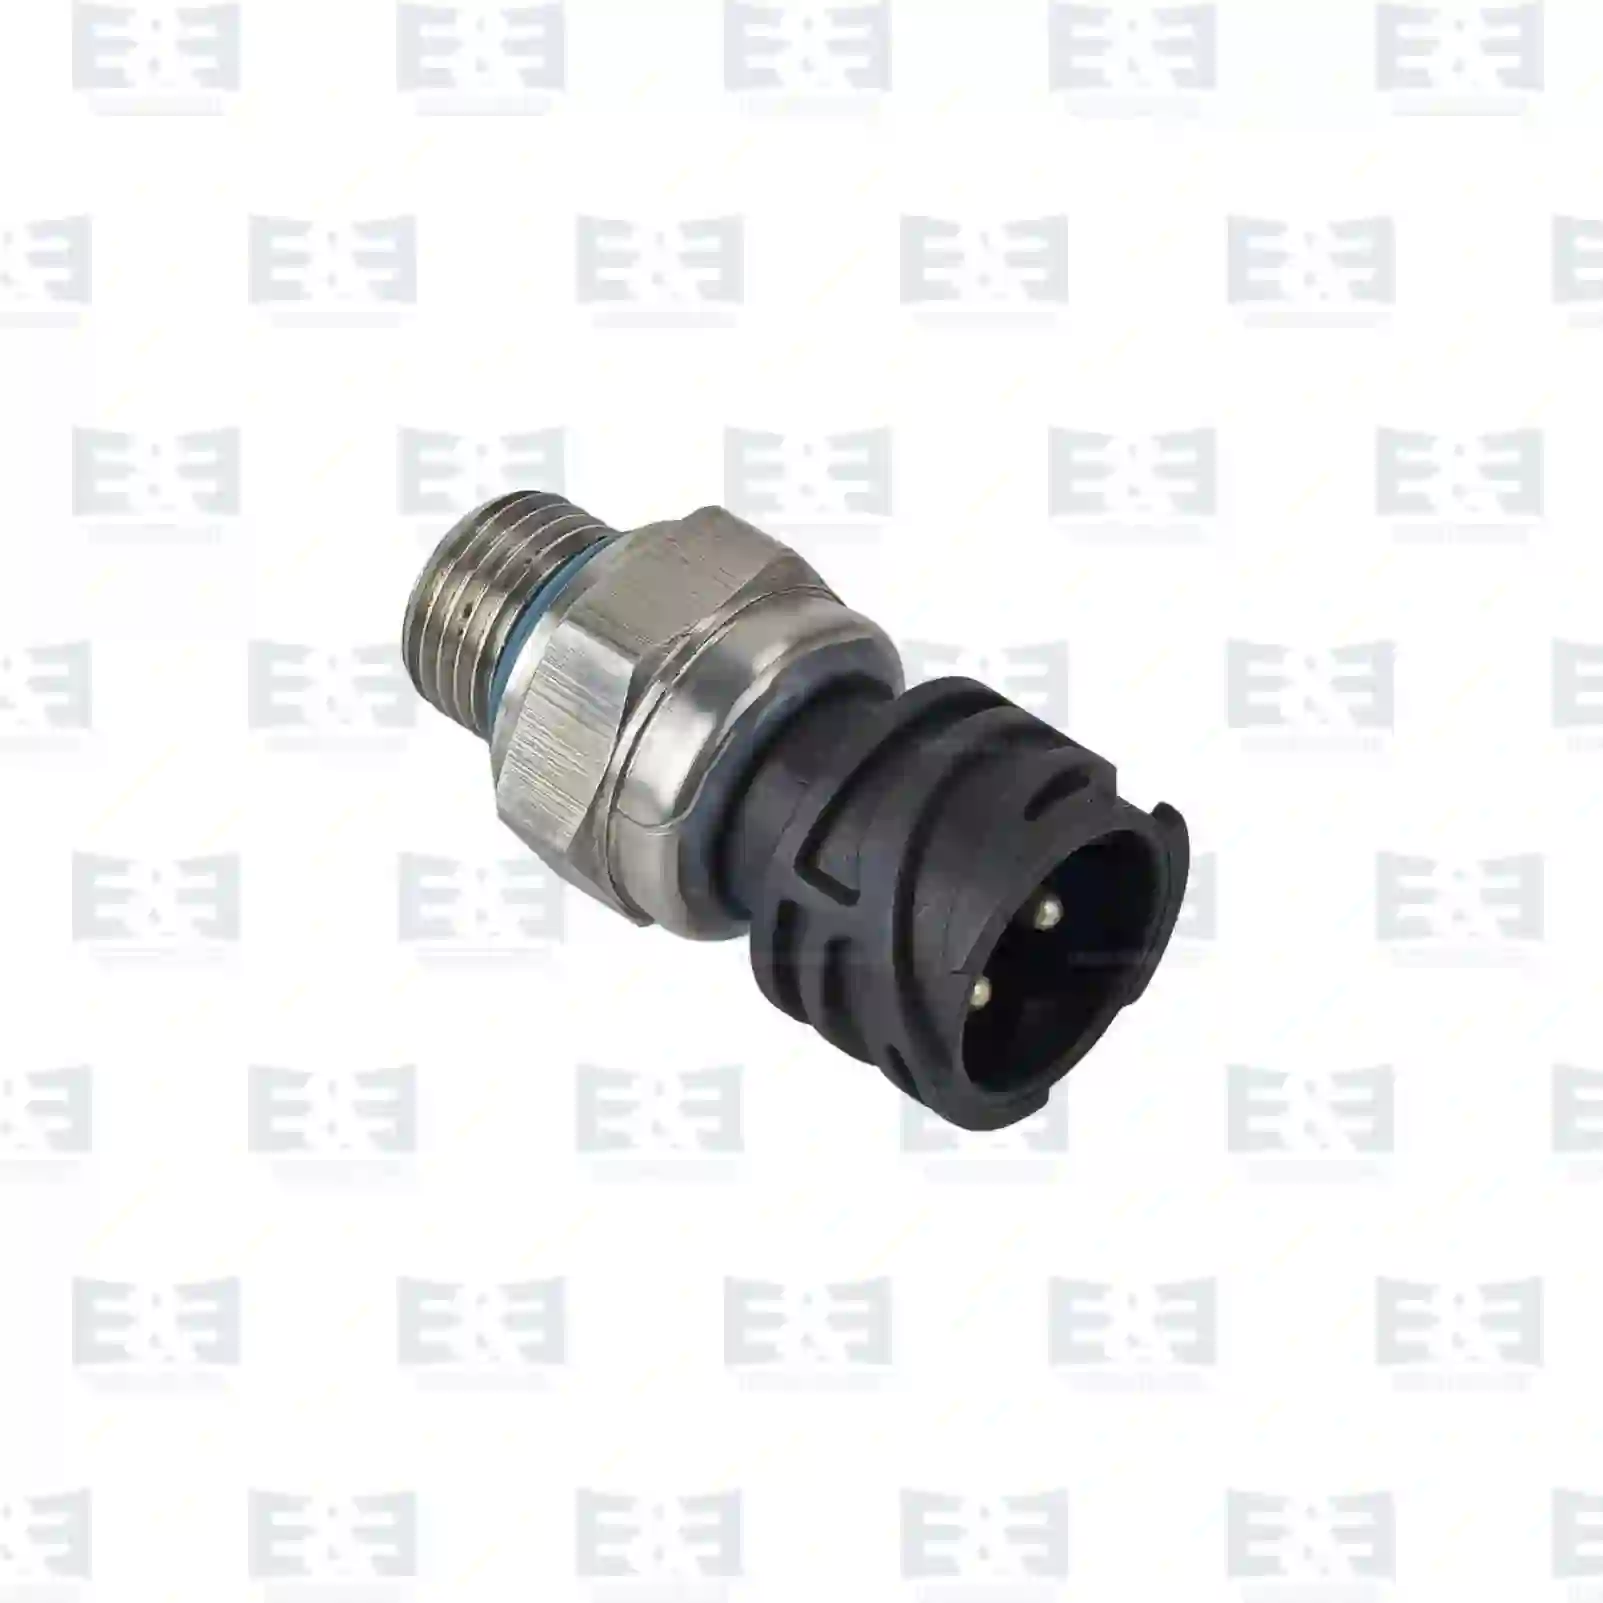 Pressure sensor, 2E2208507, 04213842, 7420484678, 7421540602, 7421634024, 7485139619, 20375013, 20428456, 20484678, 20886108, 21540602, 21634024, 85139619, ZG20719-0008 ||  2E2208507 E&E Truck Spare Parts | Truck Spare Parts, Auotomotive Spare Parts Pressure sensor, 2E2208507, 04213842, 7420484678, 7421540602, 7421634024, 7485139619, 20375013, 20428456, 20484678, 20886108, 21540602, 21634024, 85139619, ZG20719-0008 ||  2E2208507 E&E Truck Spare Parts | Truck Spare Parts, Auotomotive Spare Parts